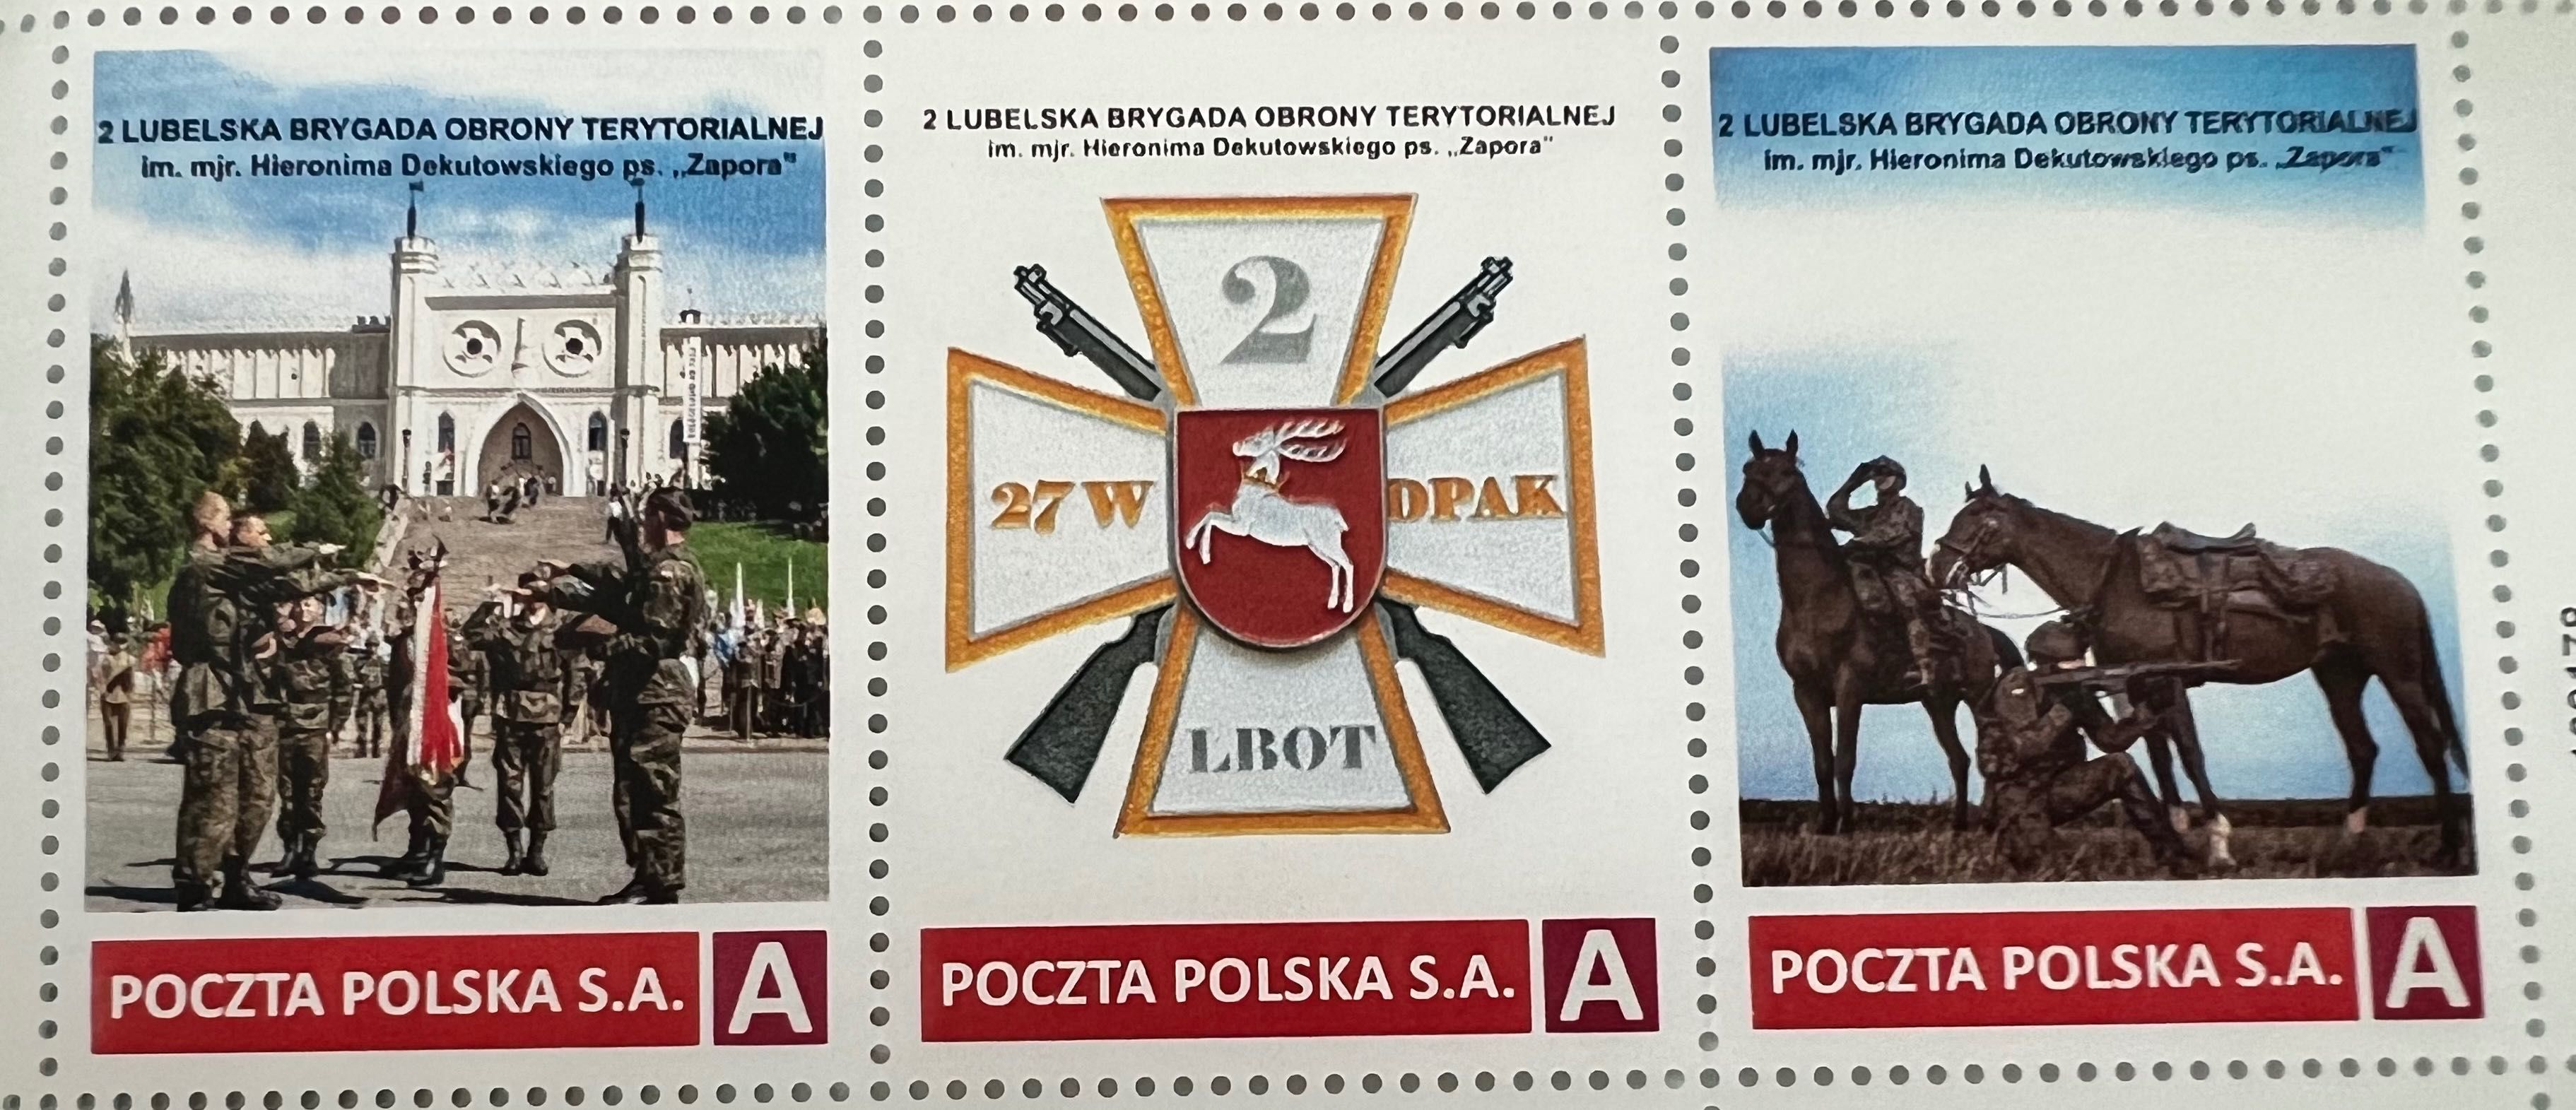 Unikat zestaw 3 znaczków + pocztówka - 2 LBOT / wojsko